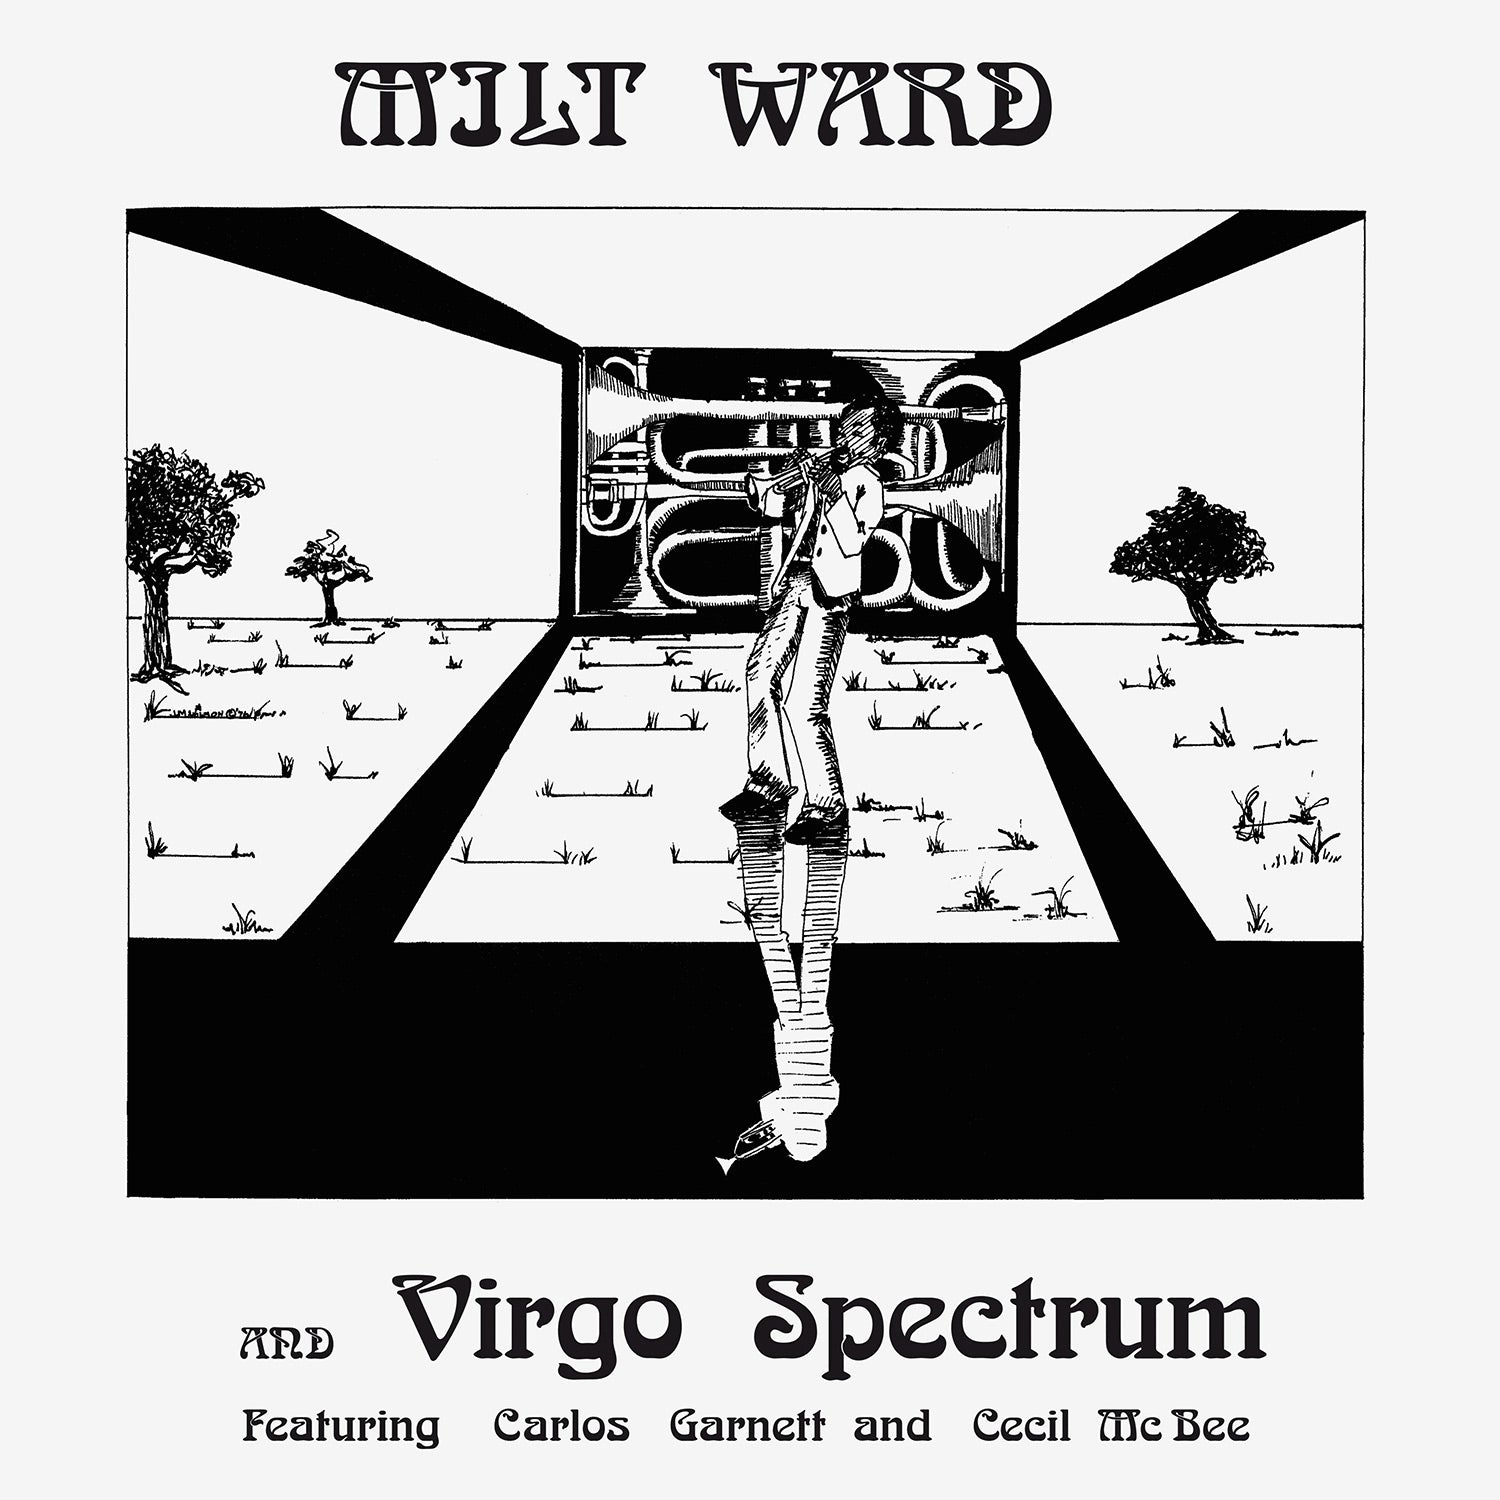 Milt Ward and Virgo Spectrum